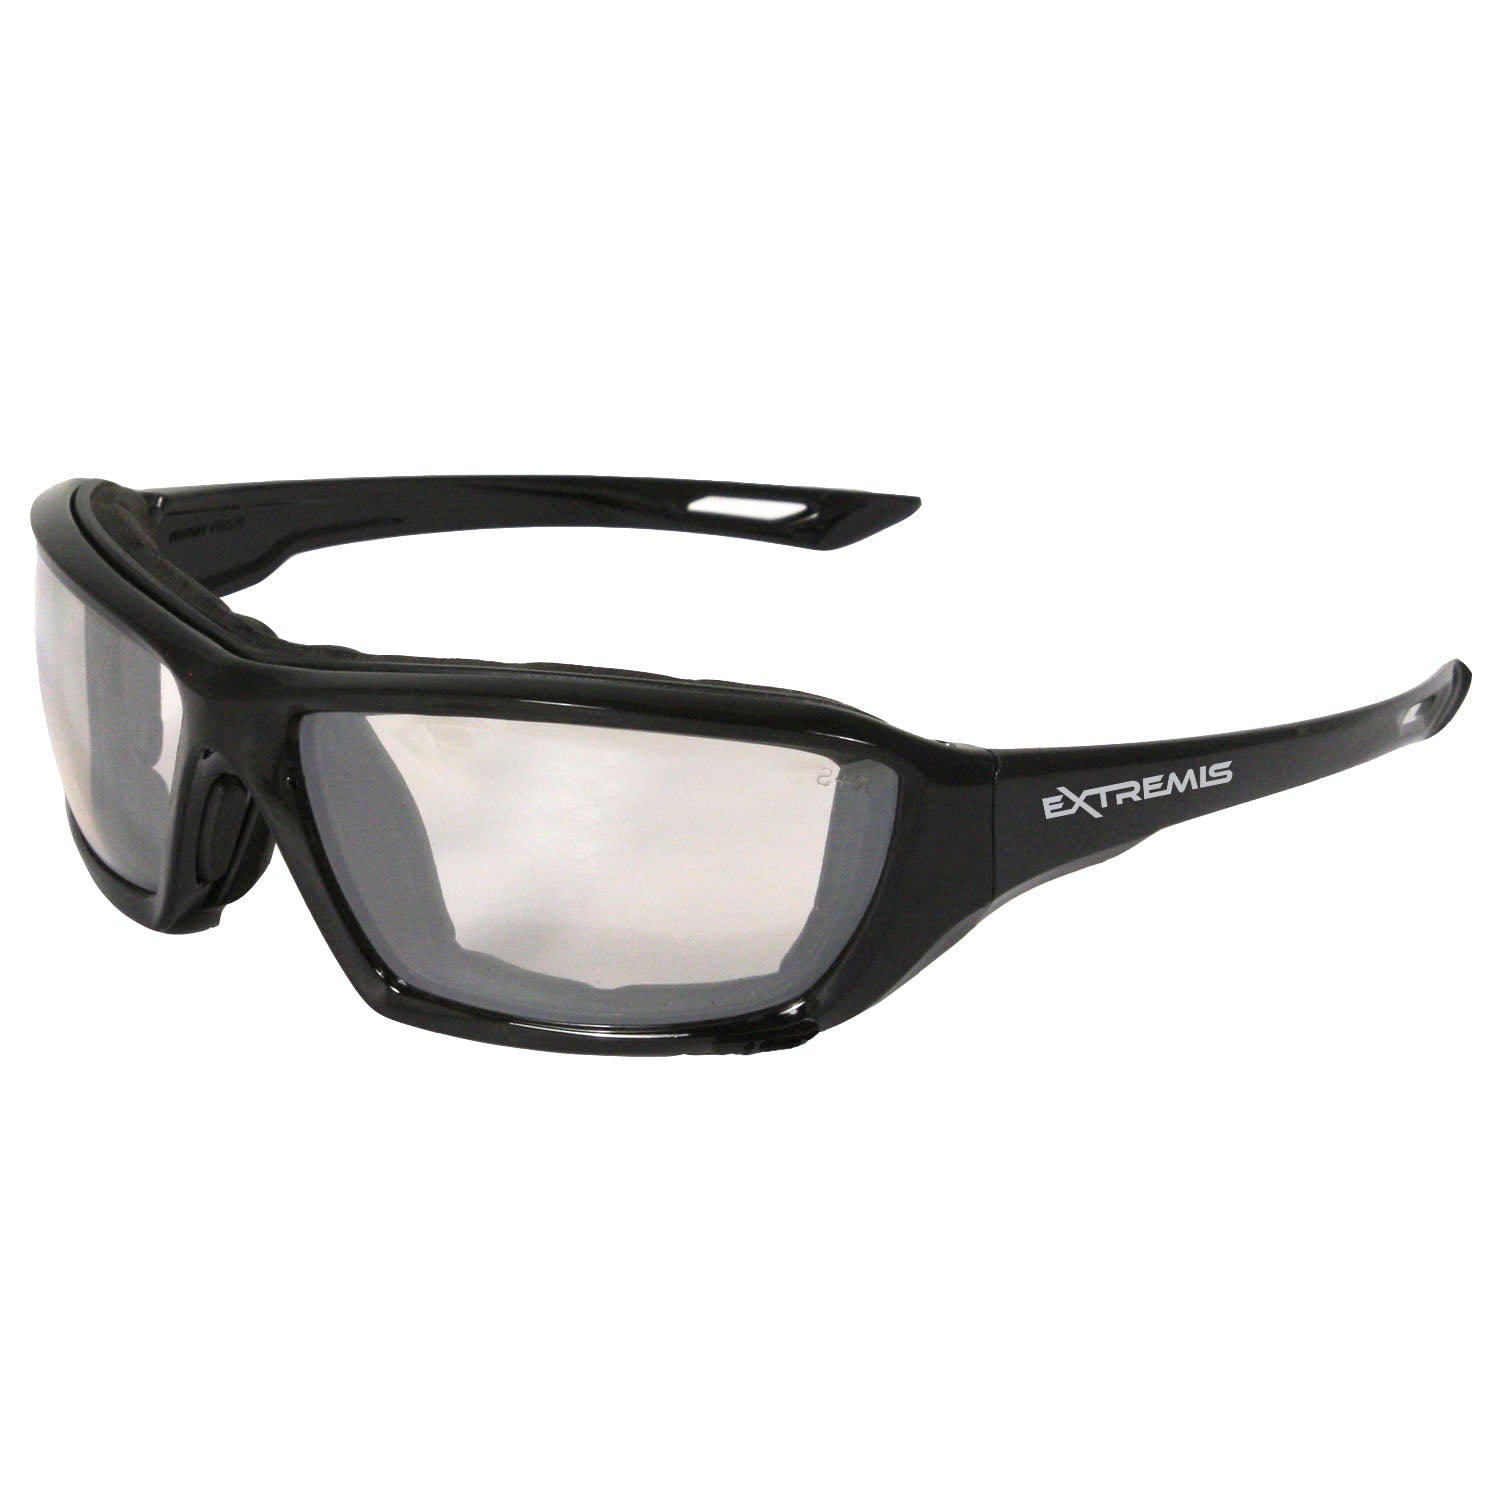 Gafas de seguridad Extremis® - Montura negra - Lentes antivaho para interiores y exteriores